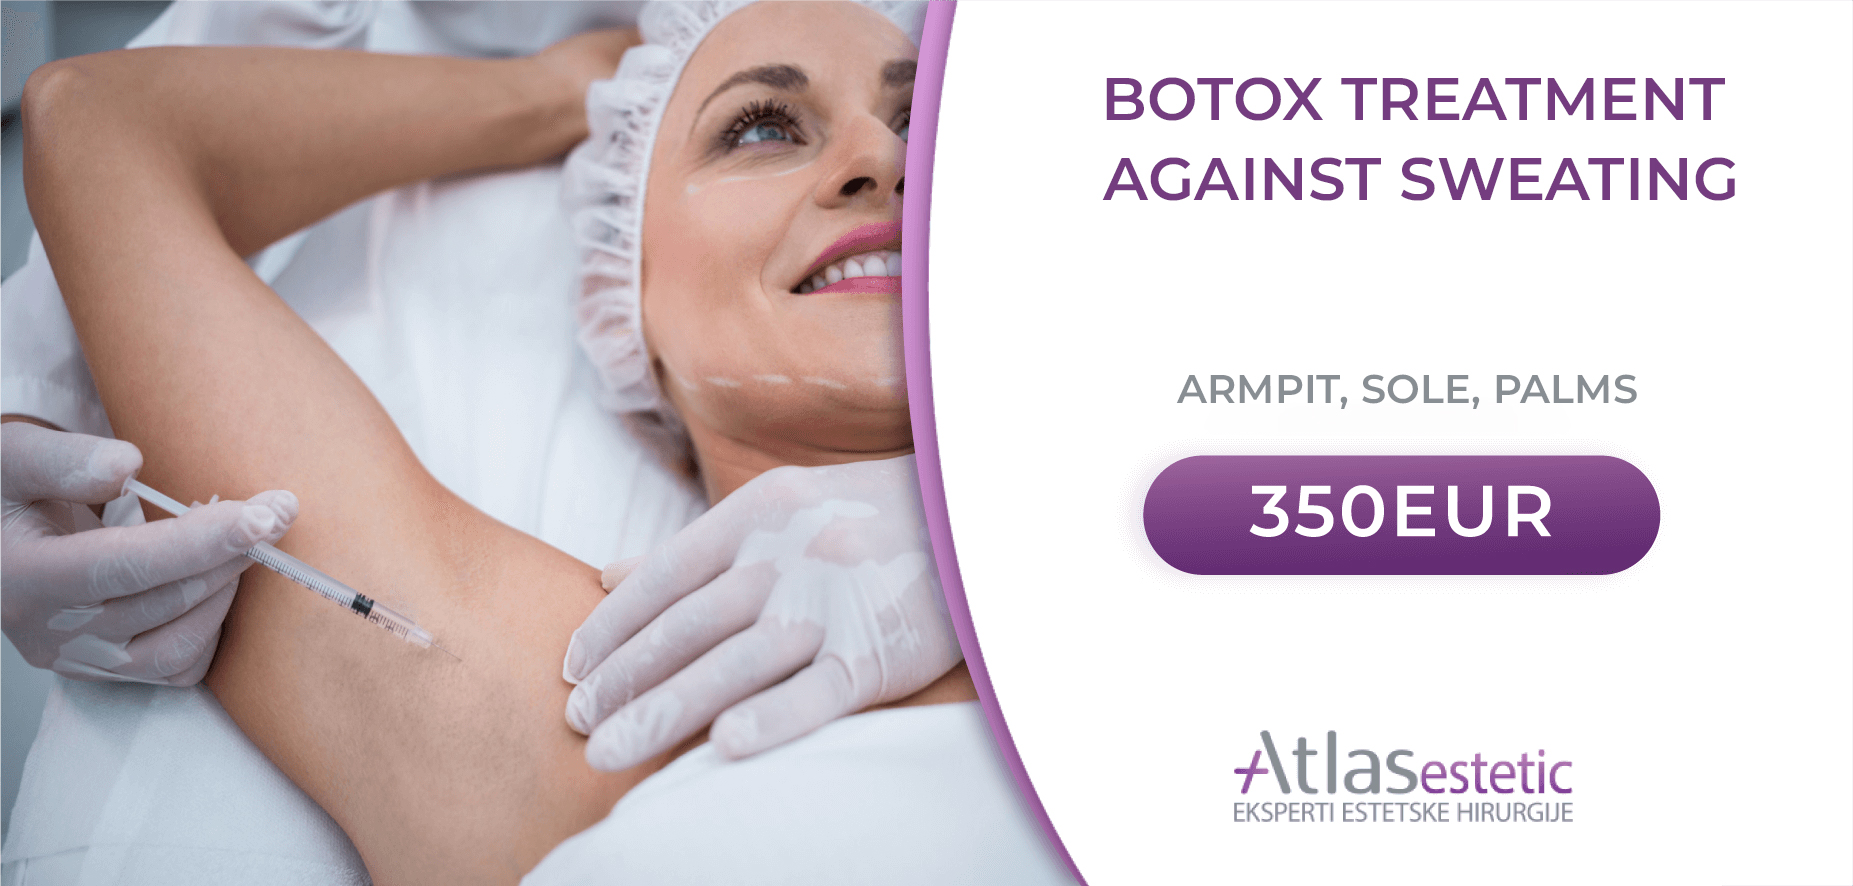 Botox-tretman-protiv-znojenja-letnja-akcija EN VER